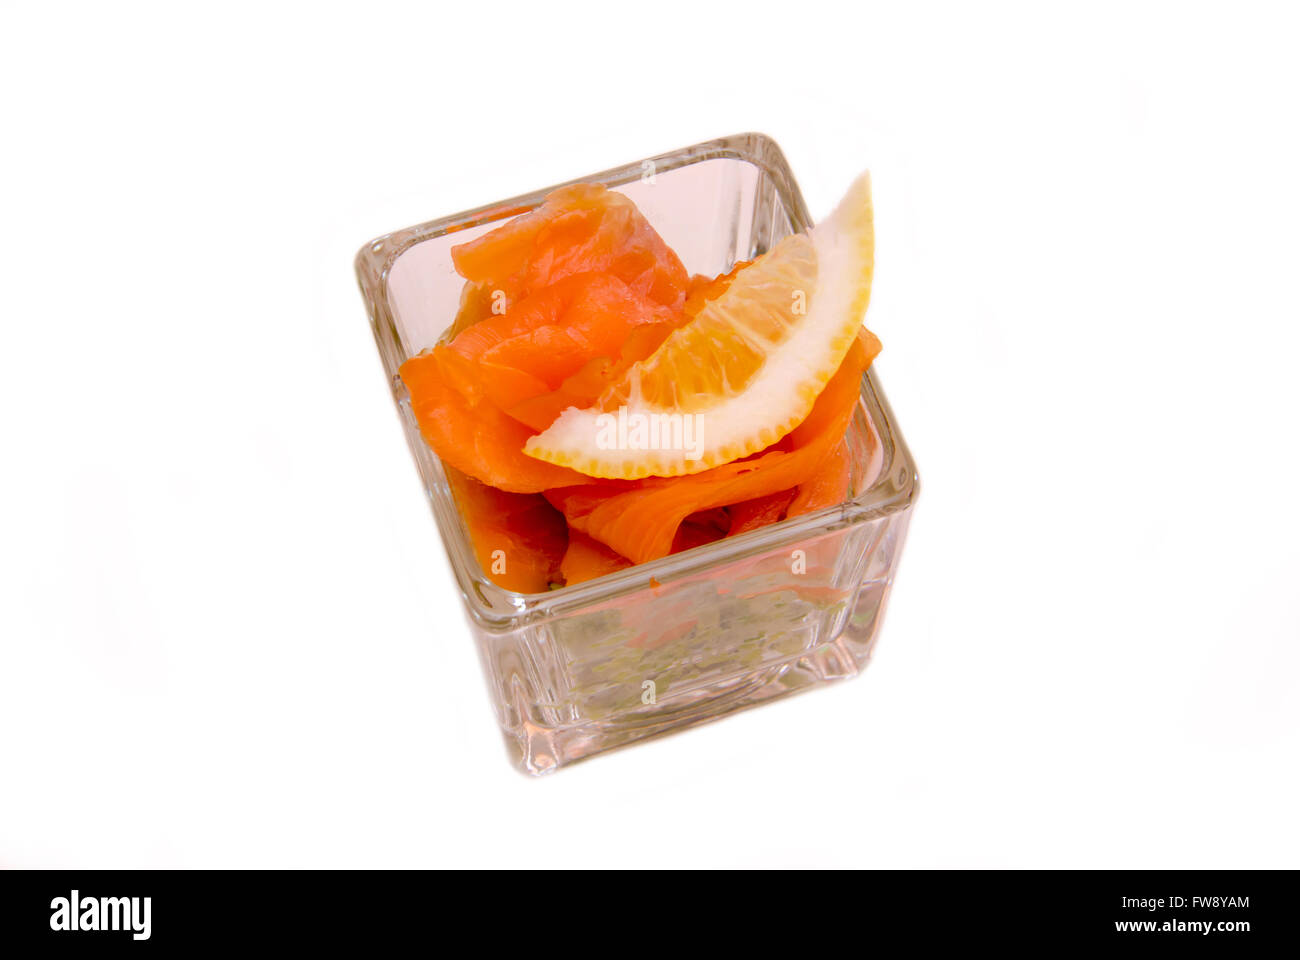 Avocado e salmone affumicato su vetro quadrato su uno sfondo bianco visto da sopra Foto Stock